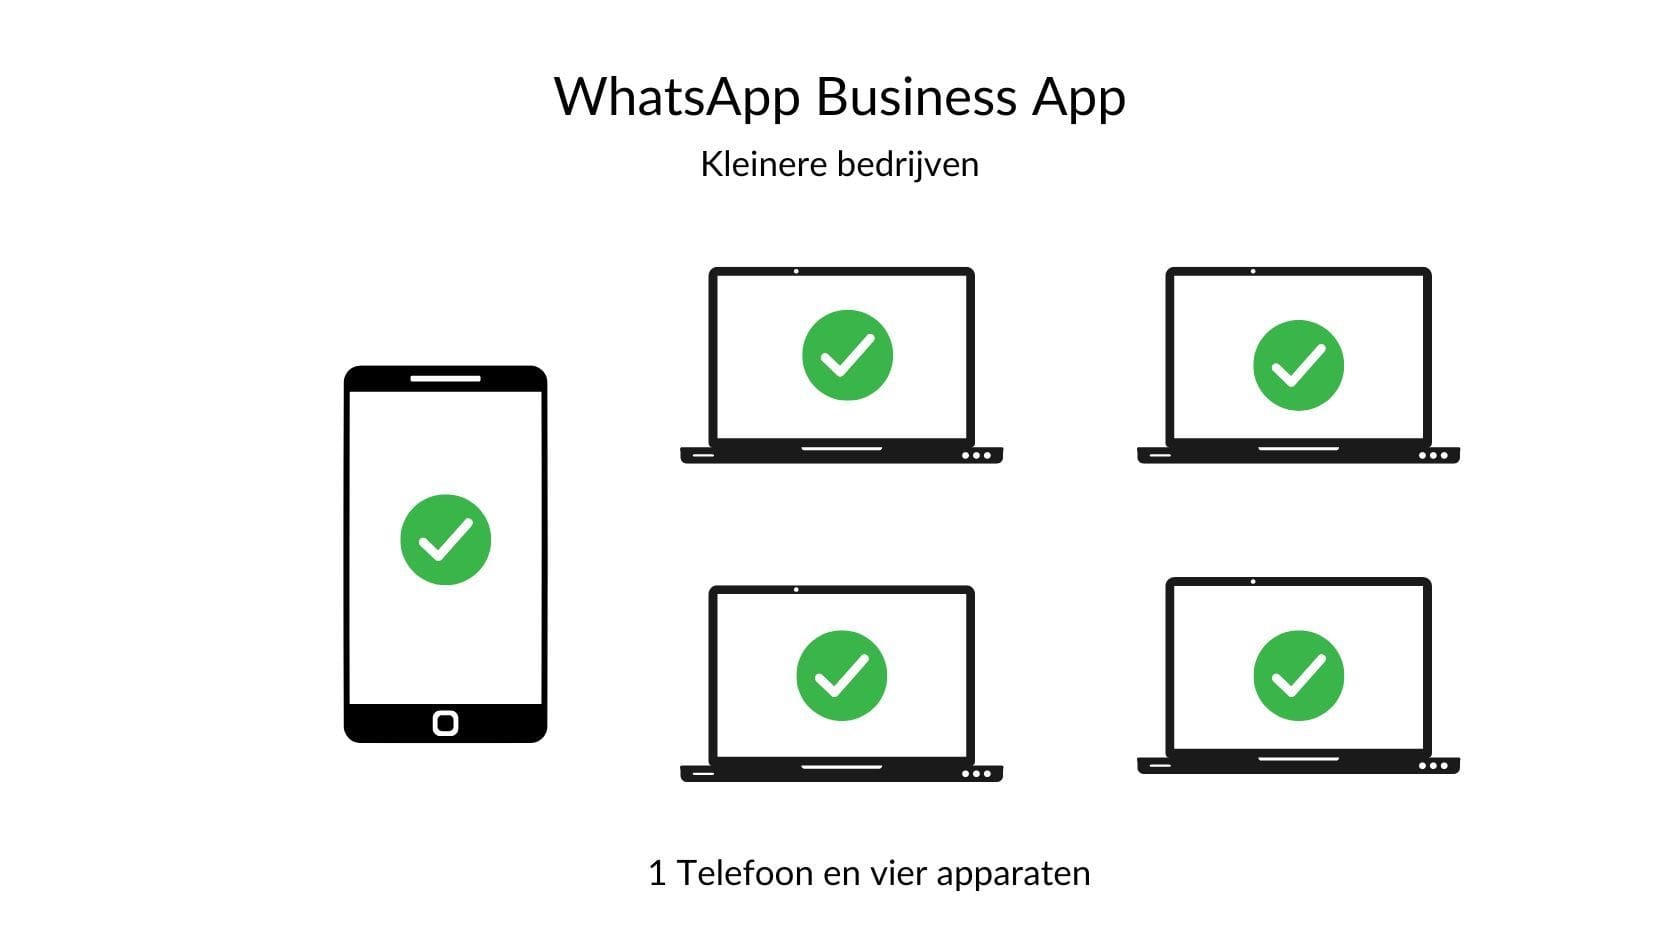 Whatsapp Business APP: maximaal 5 apparaten (bestaande uit 1 telefoon + 4 extra apparaten per nummer)